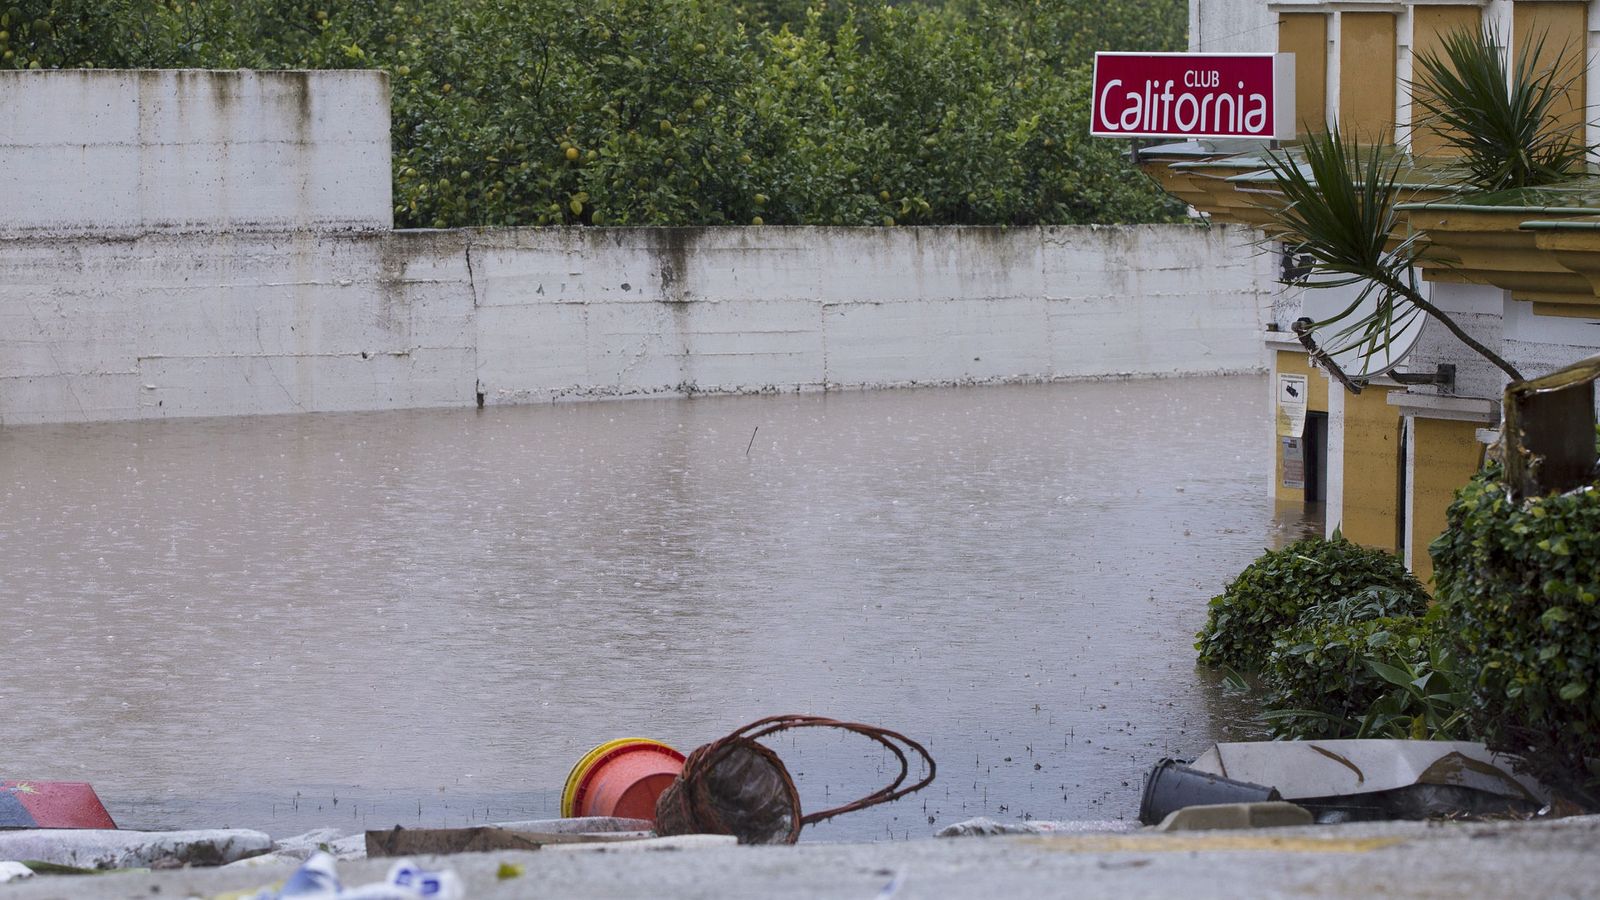 Foto: Vista del Club California inundado tras las lluvias que han anegado Málaga. (EFE)